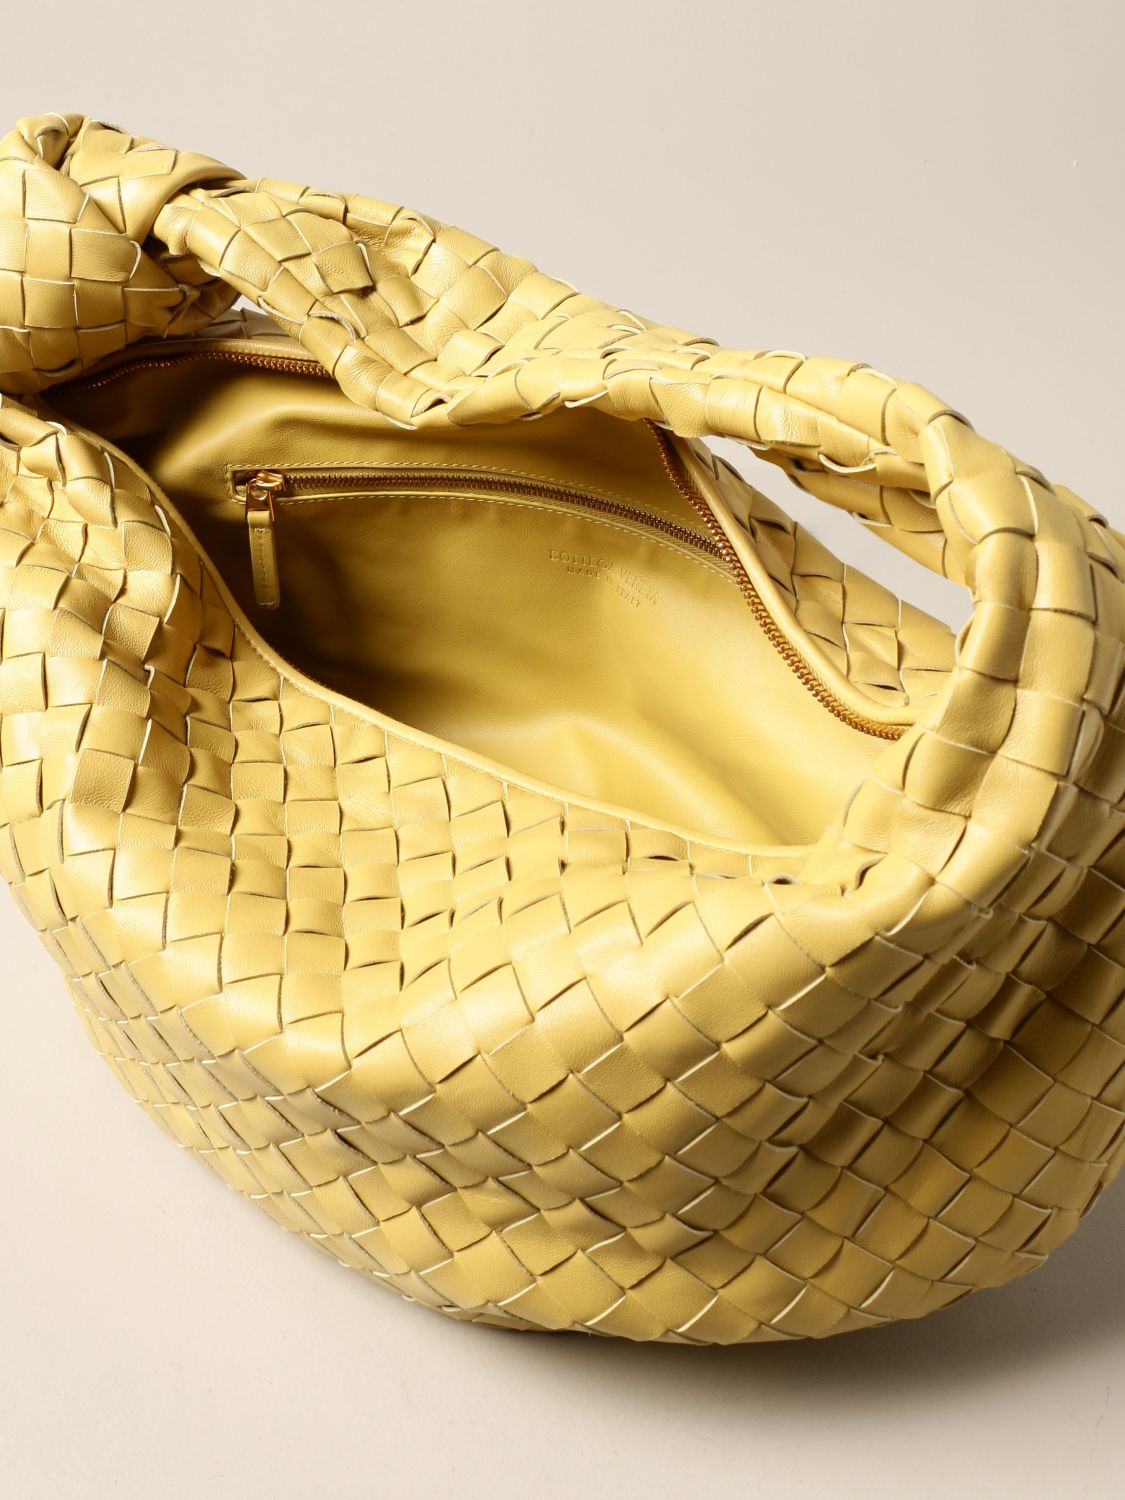 BOTTEGA VENETA: Jodie hobo bag in woven leather - Gold | Bottega Veneta ...